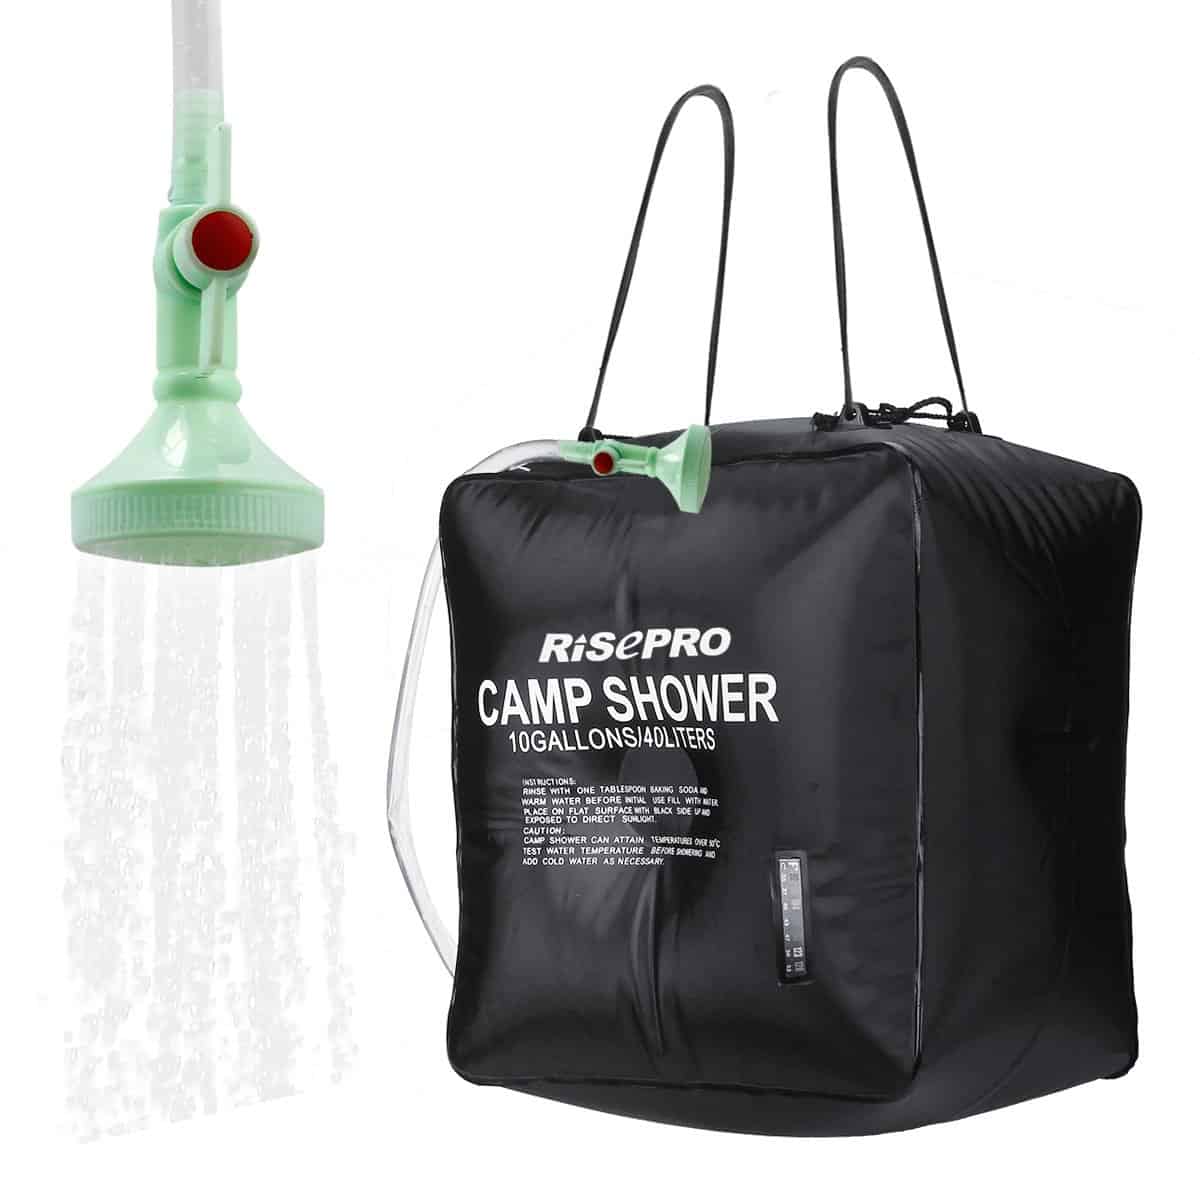 Risepro solar shower bag